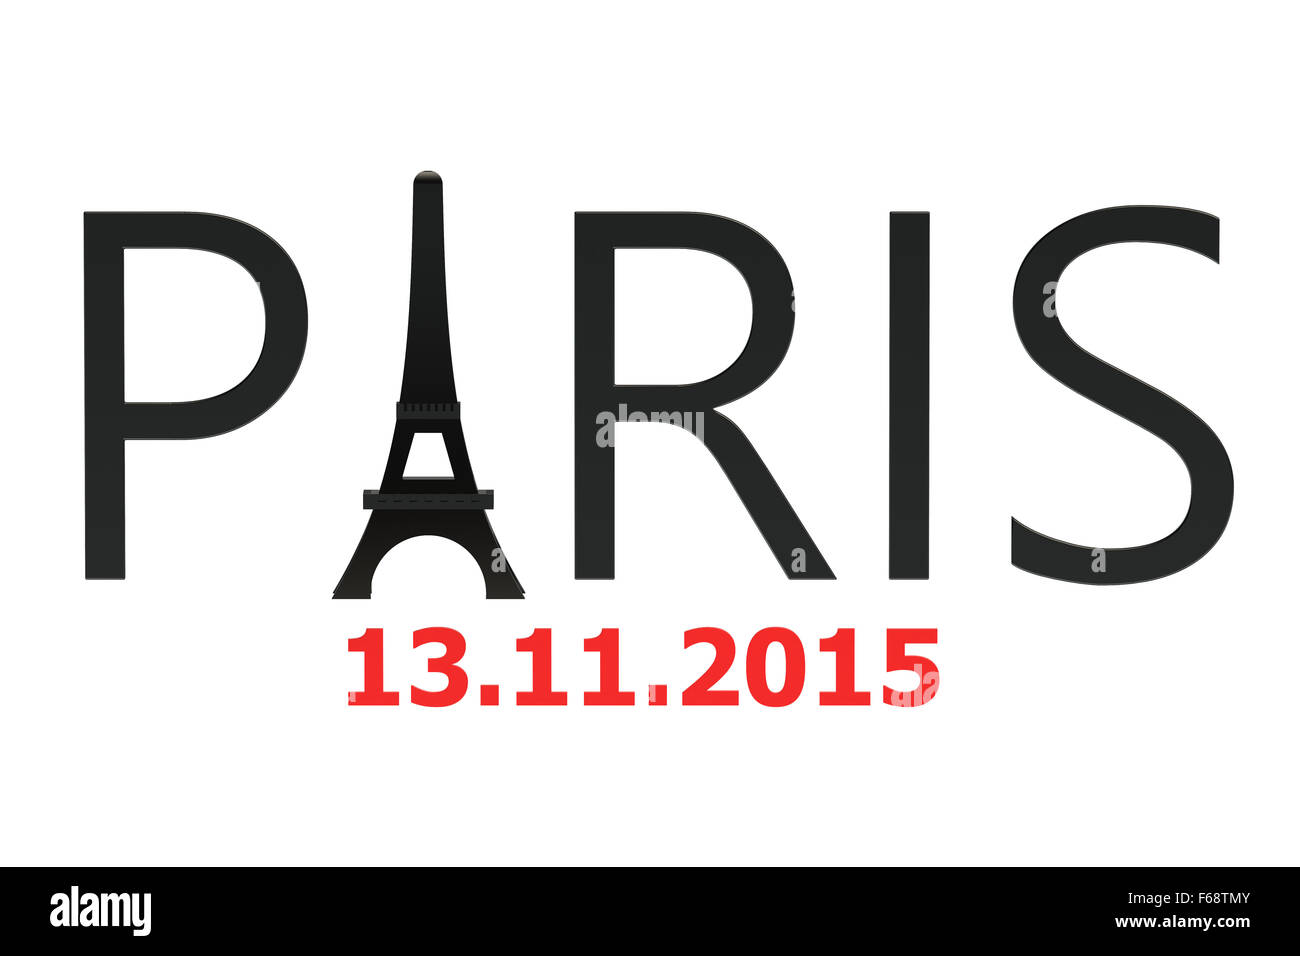 Les attaques de Paris novembre 2015 concept isolé sur fond blanc Banque D'Images